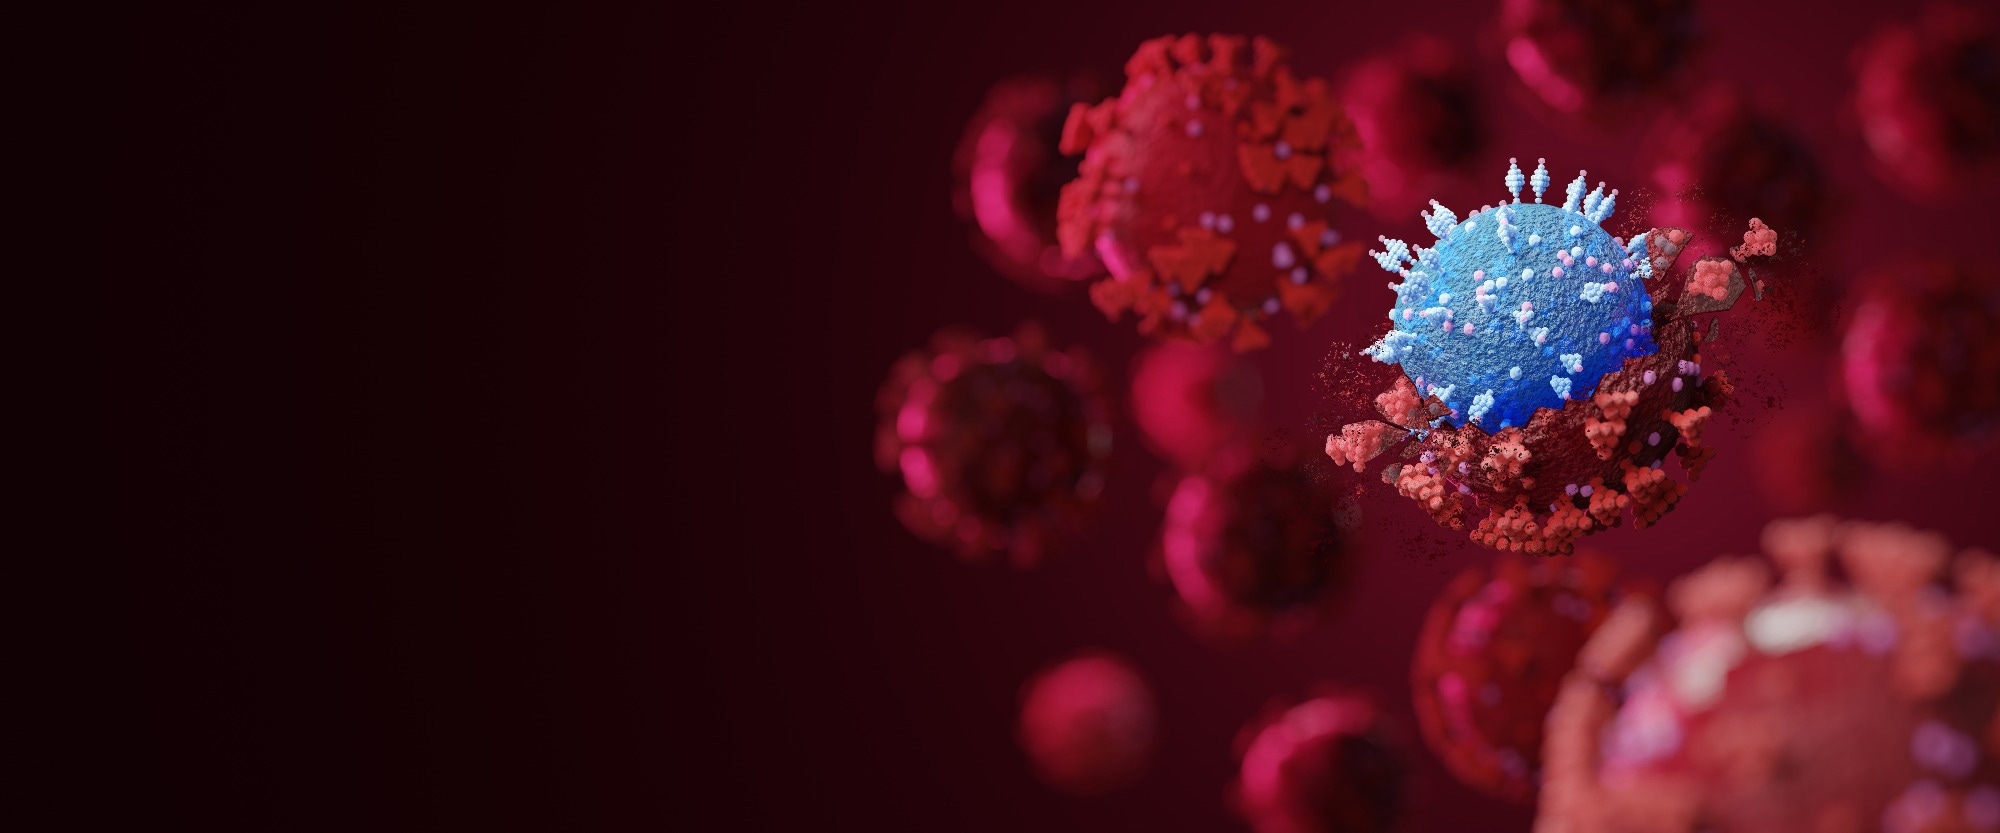 Étude : Plaintes médicales post-covid après infection par les variantes SARS-CoV-2 Omicron vs Delta.  Crédit d'image : Ajuster Ztudio/Shutterstock